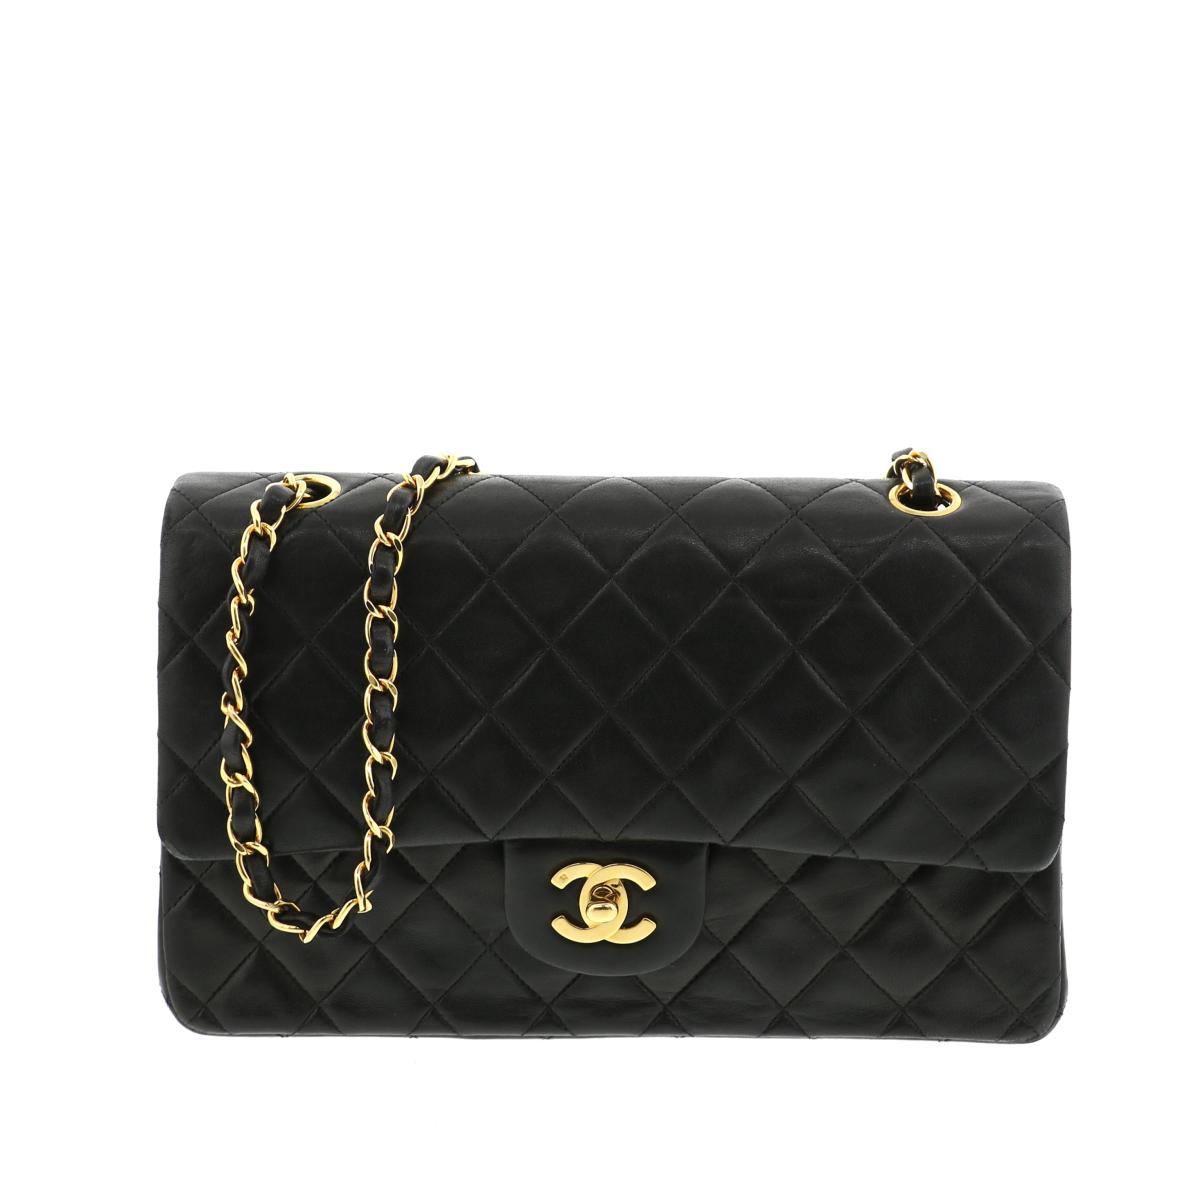 年末のプロモーション特価 Chanel シャネル マトラッセ クラシックハンドバッグ25 バッグ